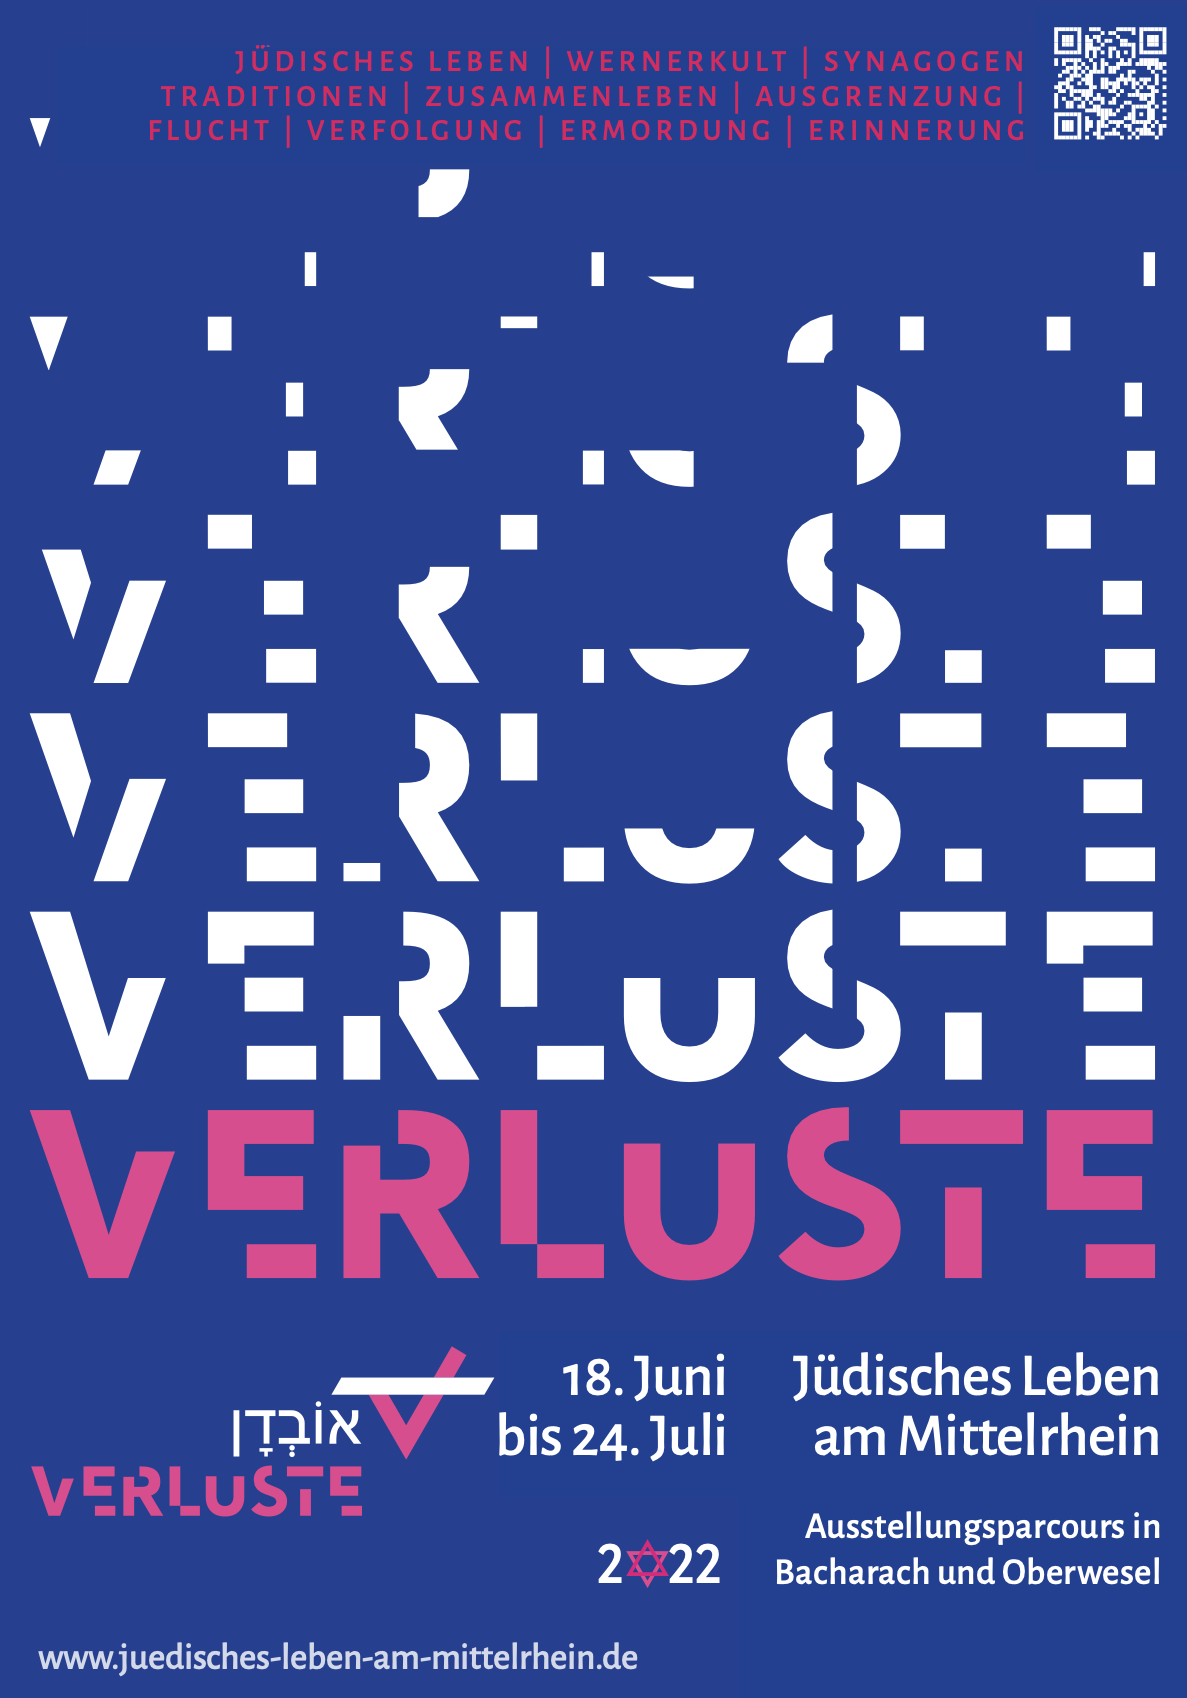 Jüdisches Leben am Mittelrhein – Ausstellungsparcours in Bacharach und Oberwesel